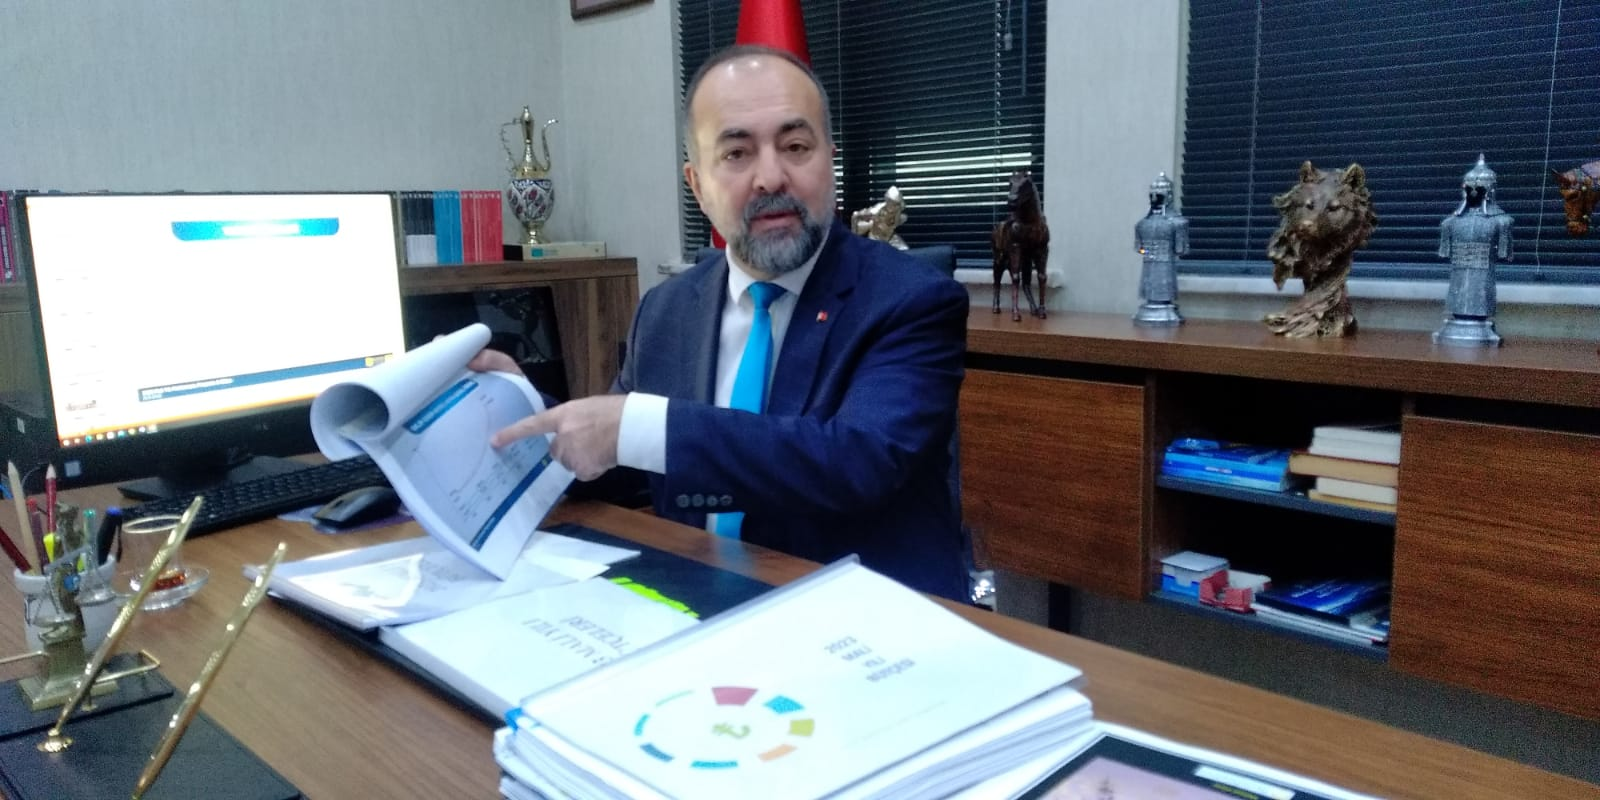 Balıkesir Büyükşehir Belediyesi’nin 9 milyar 2 bin 23 lira tutarındaki 2023 yılı bütçesinin detayları şekillenmeye başladı.